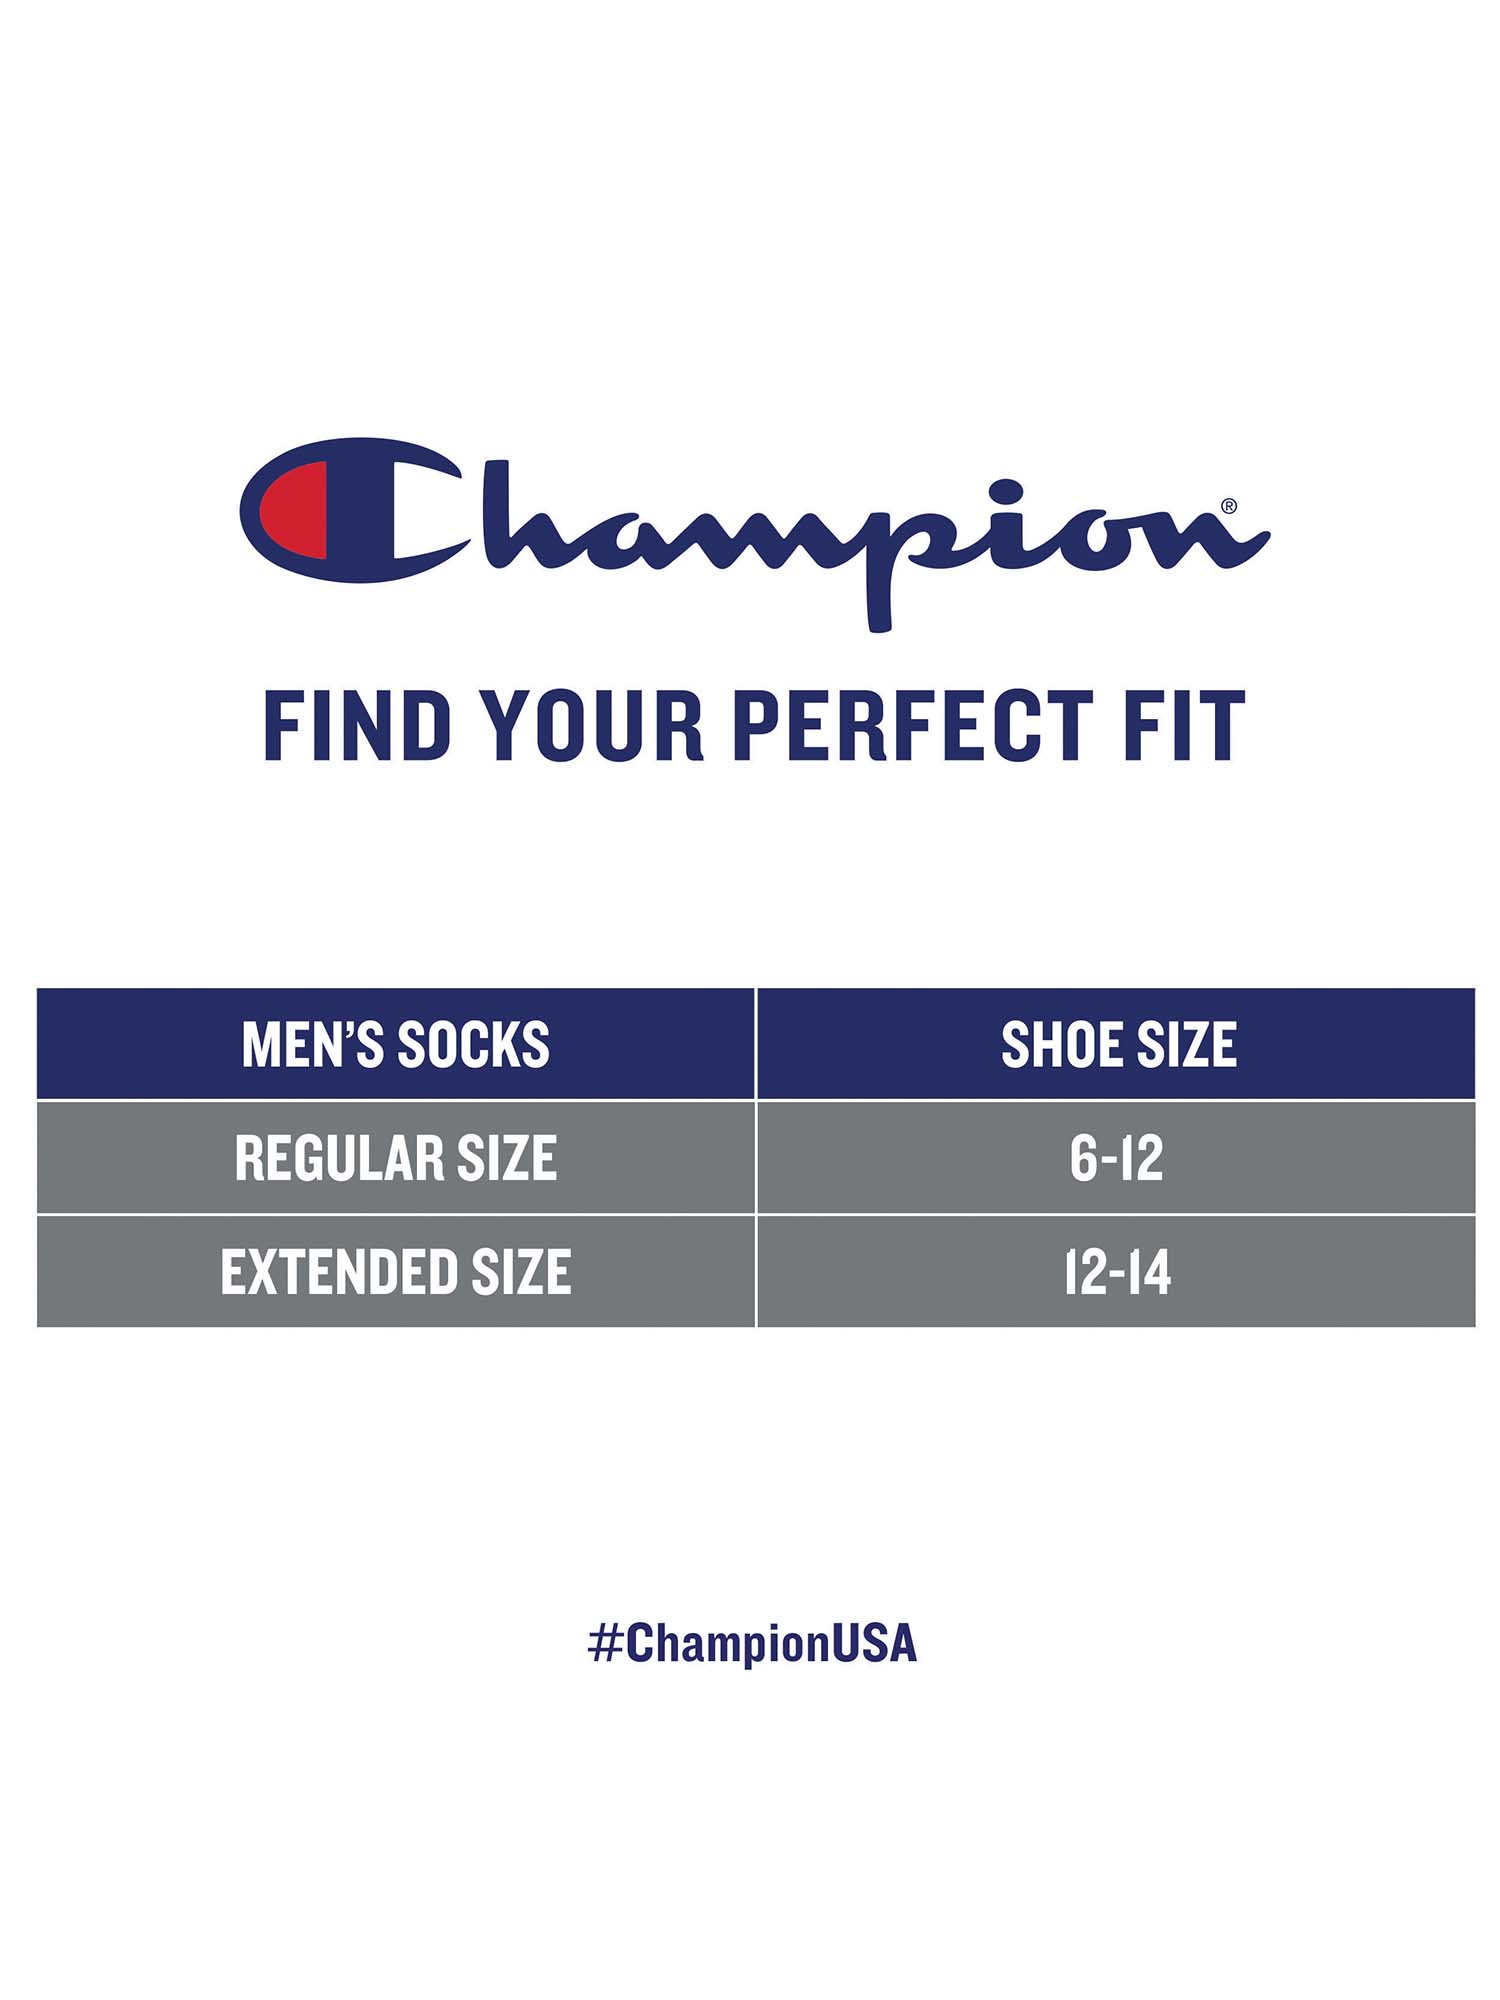 Champion Men's Crew Socks Gift Box, 6 Pack - image 6 of 7